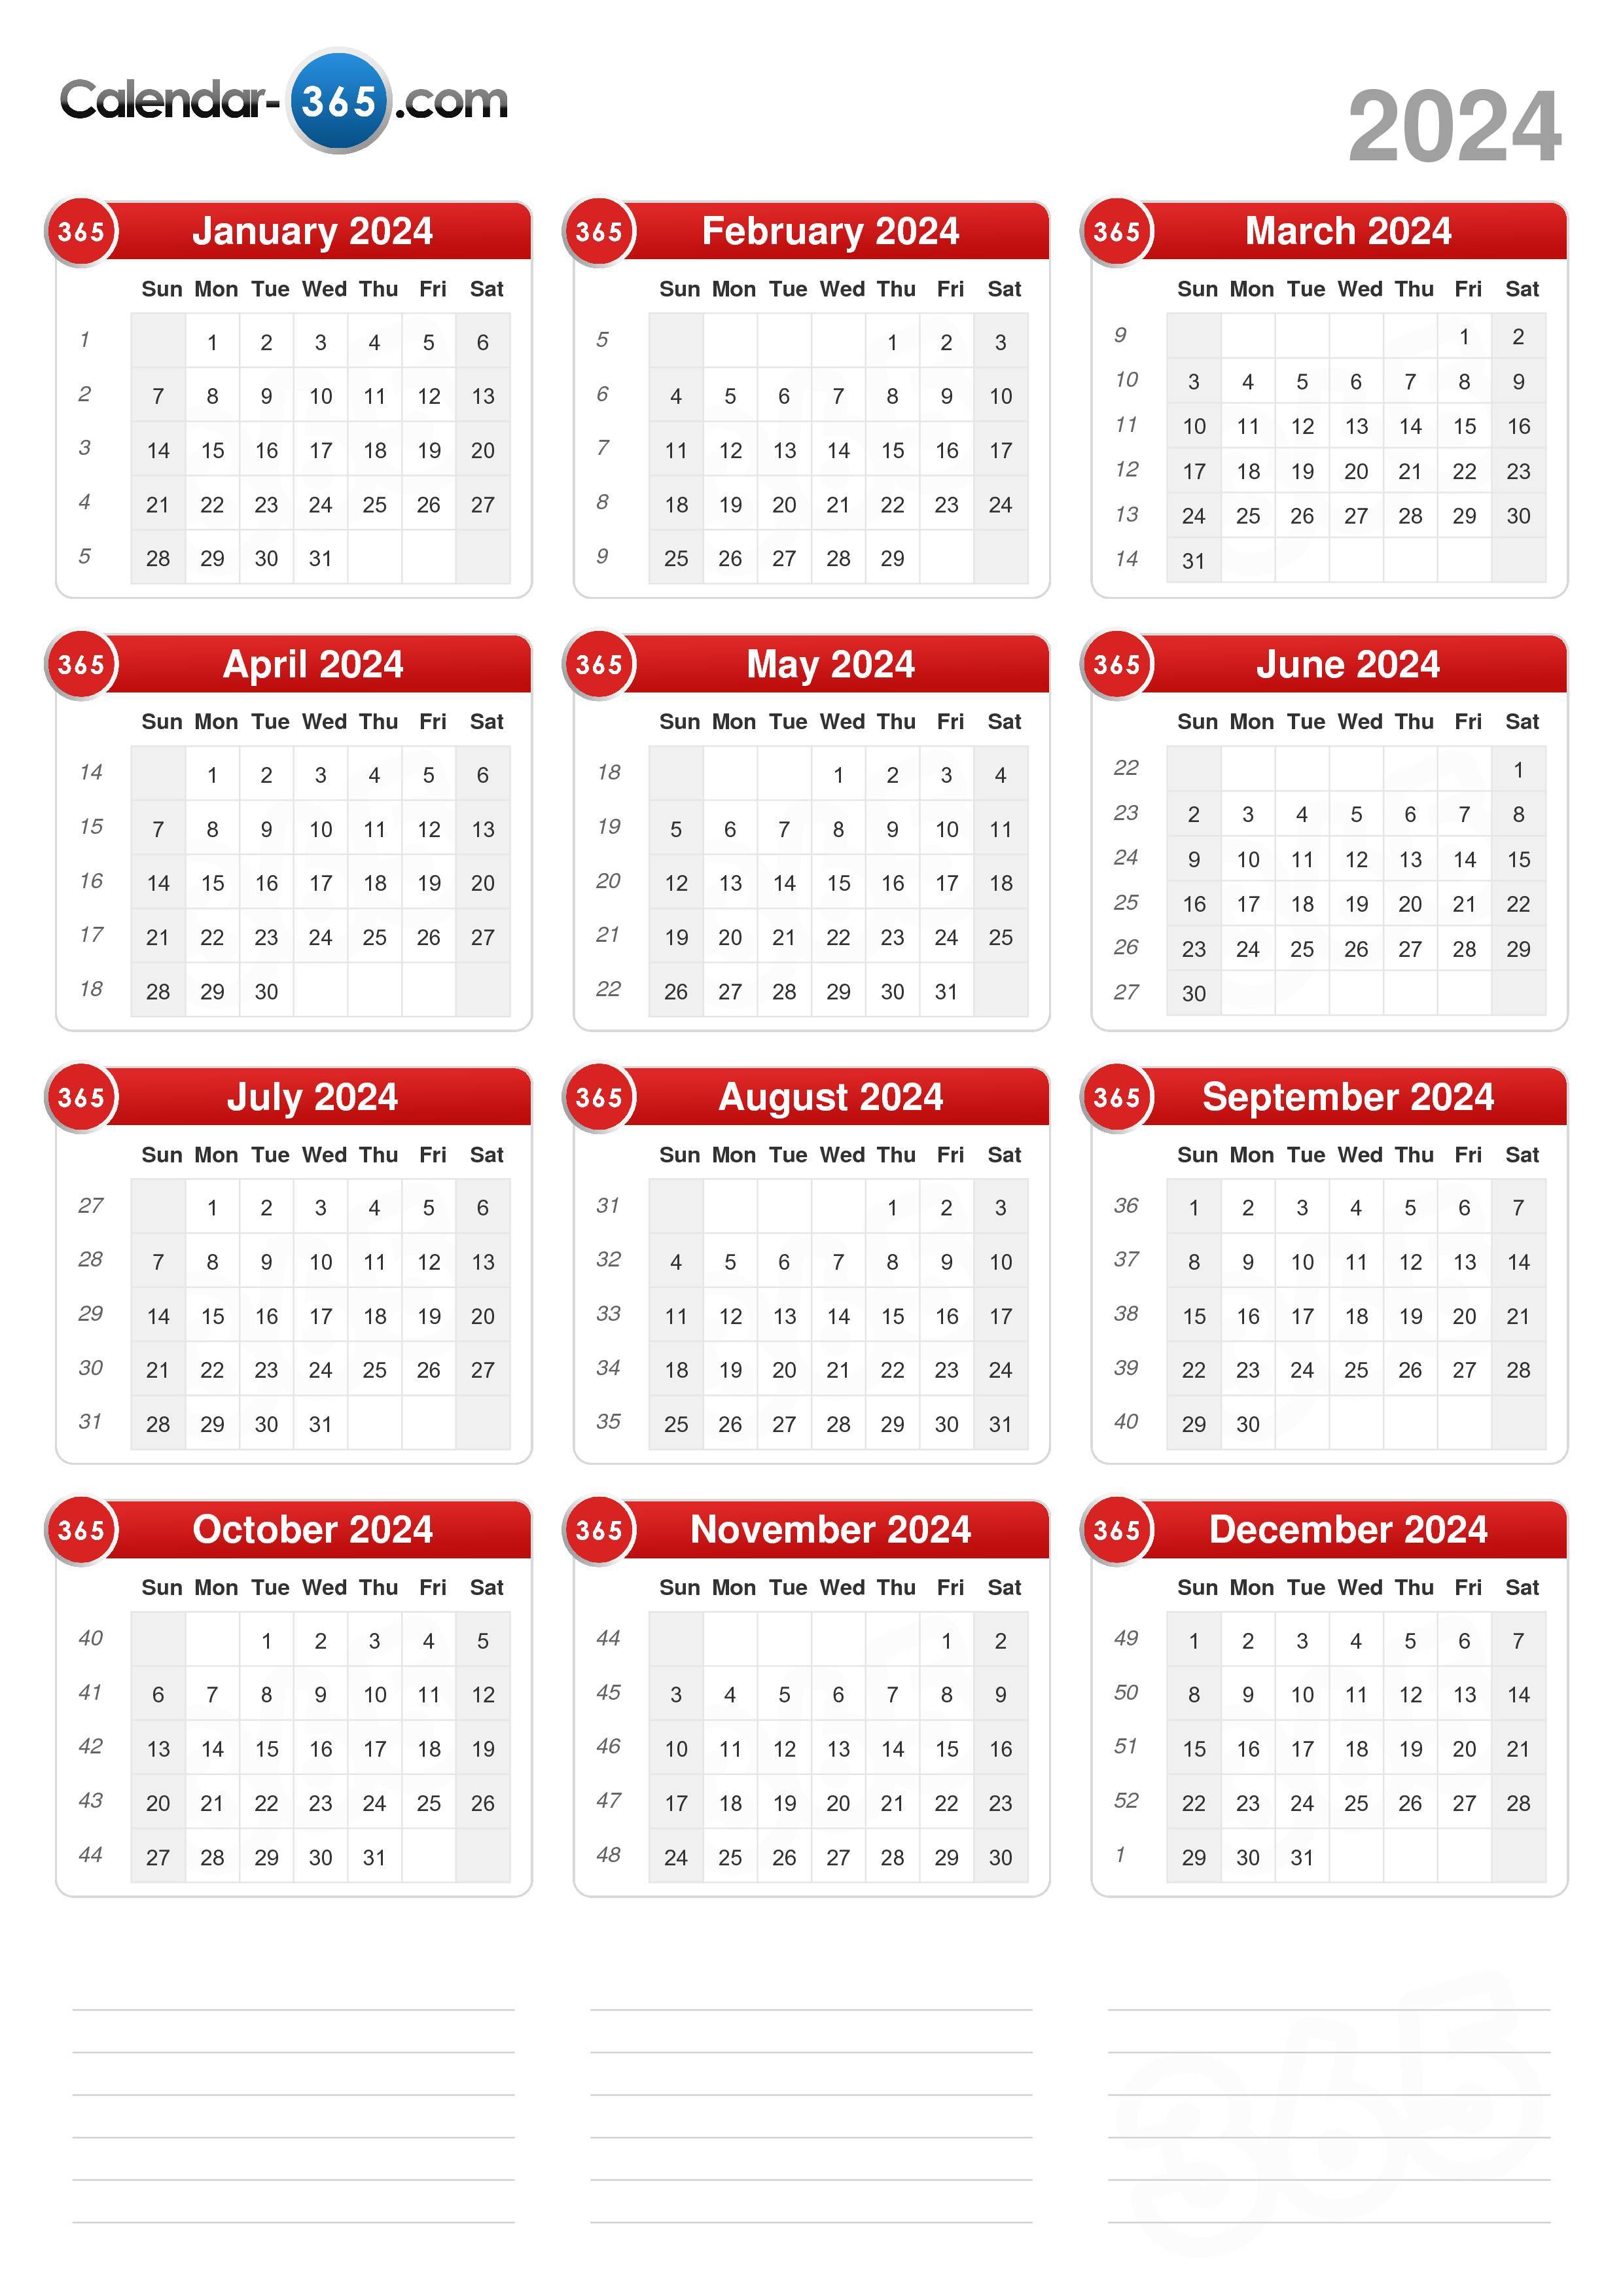 Reno Events Calendar 2024 Calendar of January 2024 Free Printable